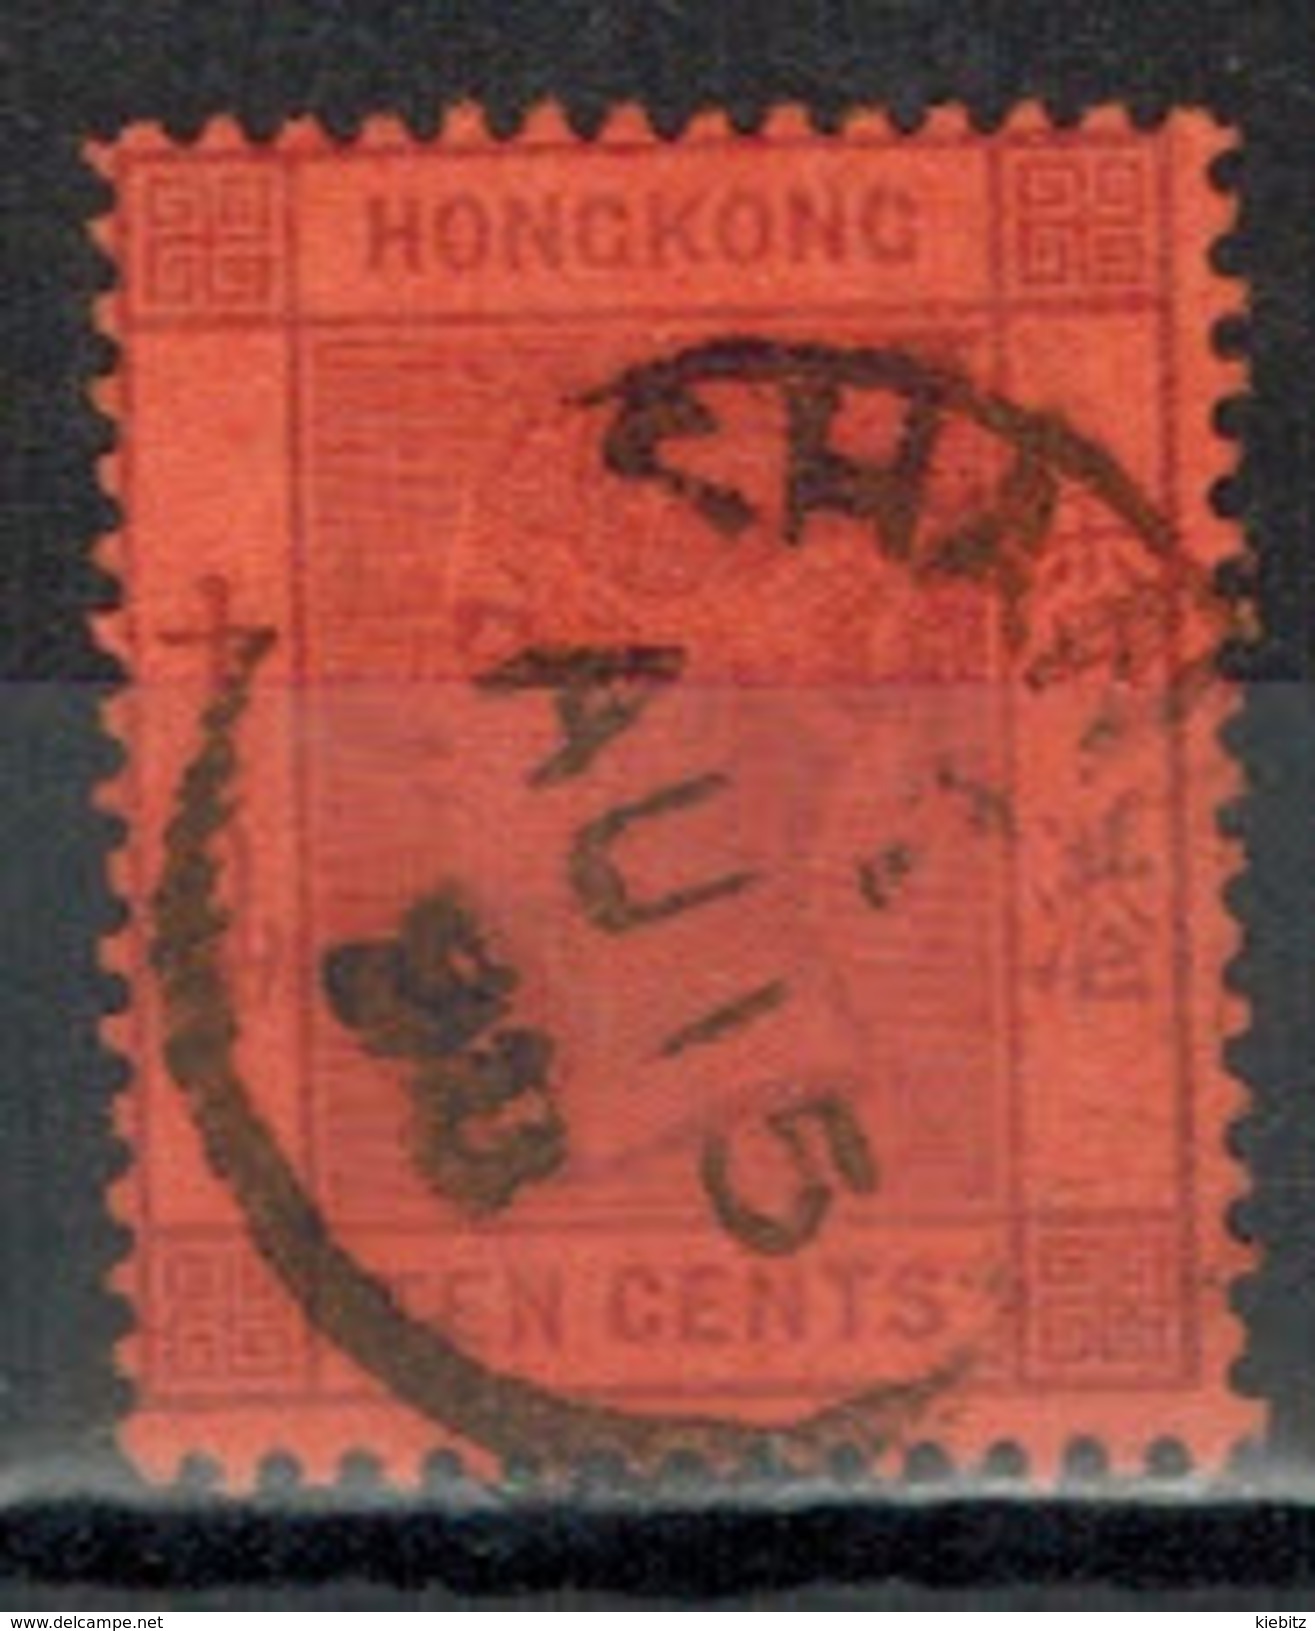 HONGKONG 1891 - MiNr: 44  Used - Gebraucht